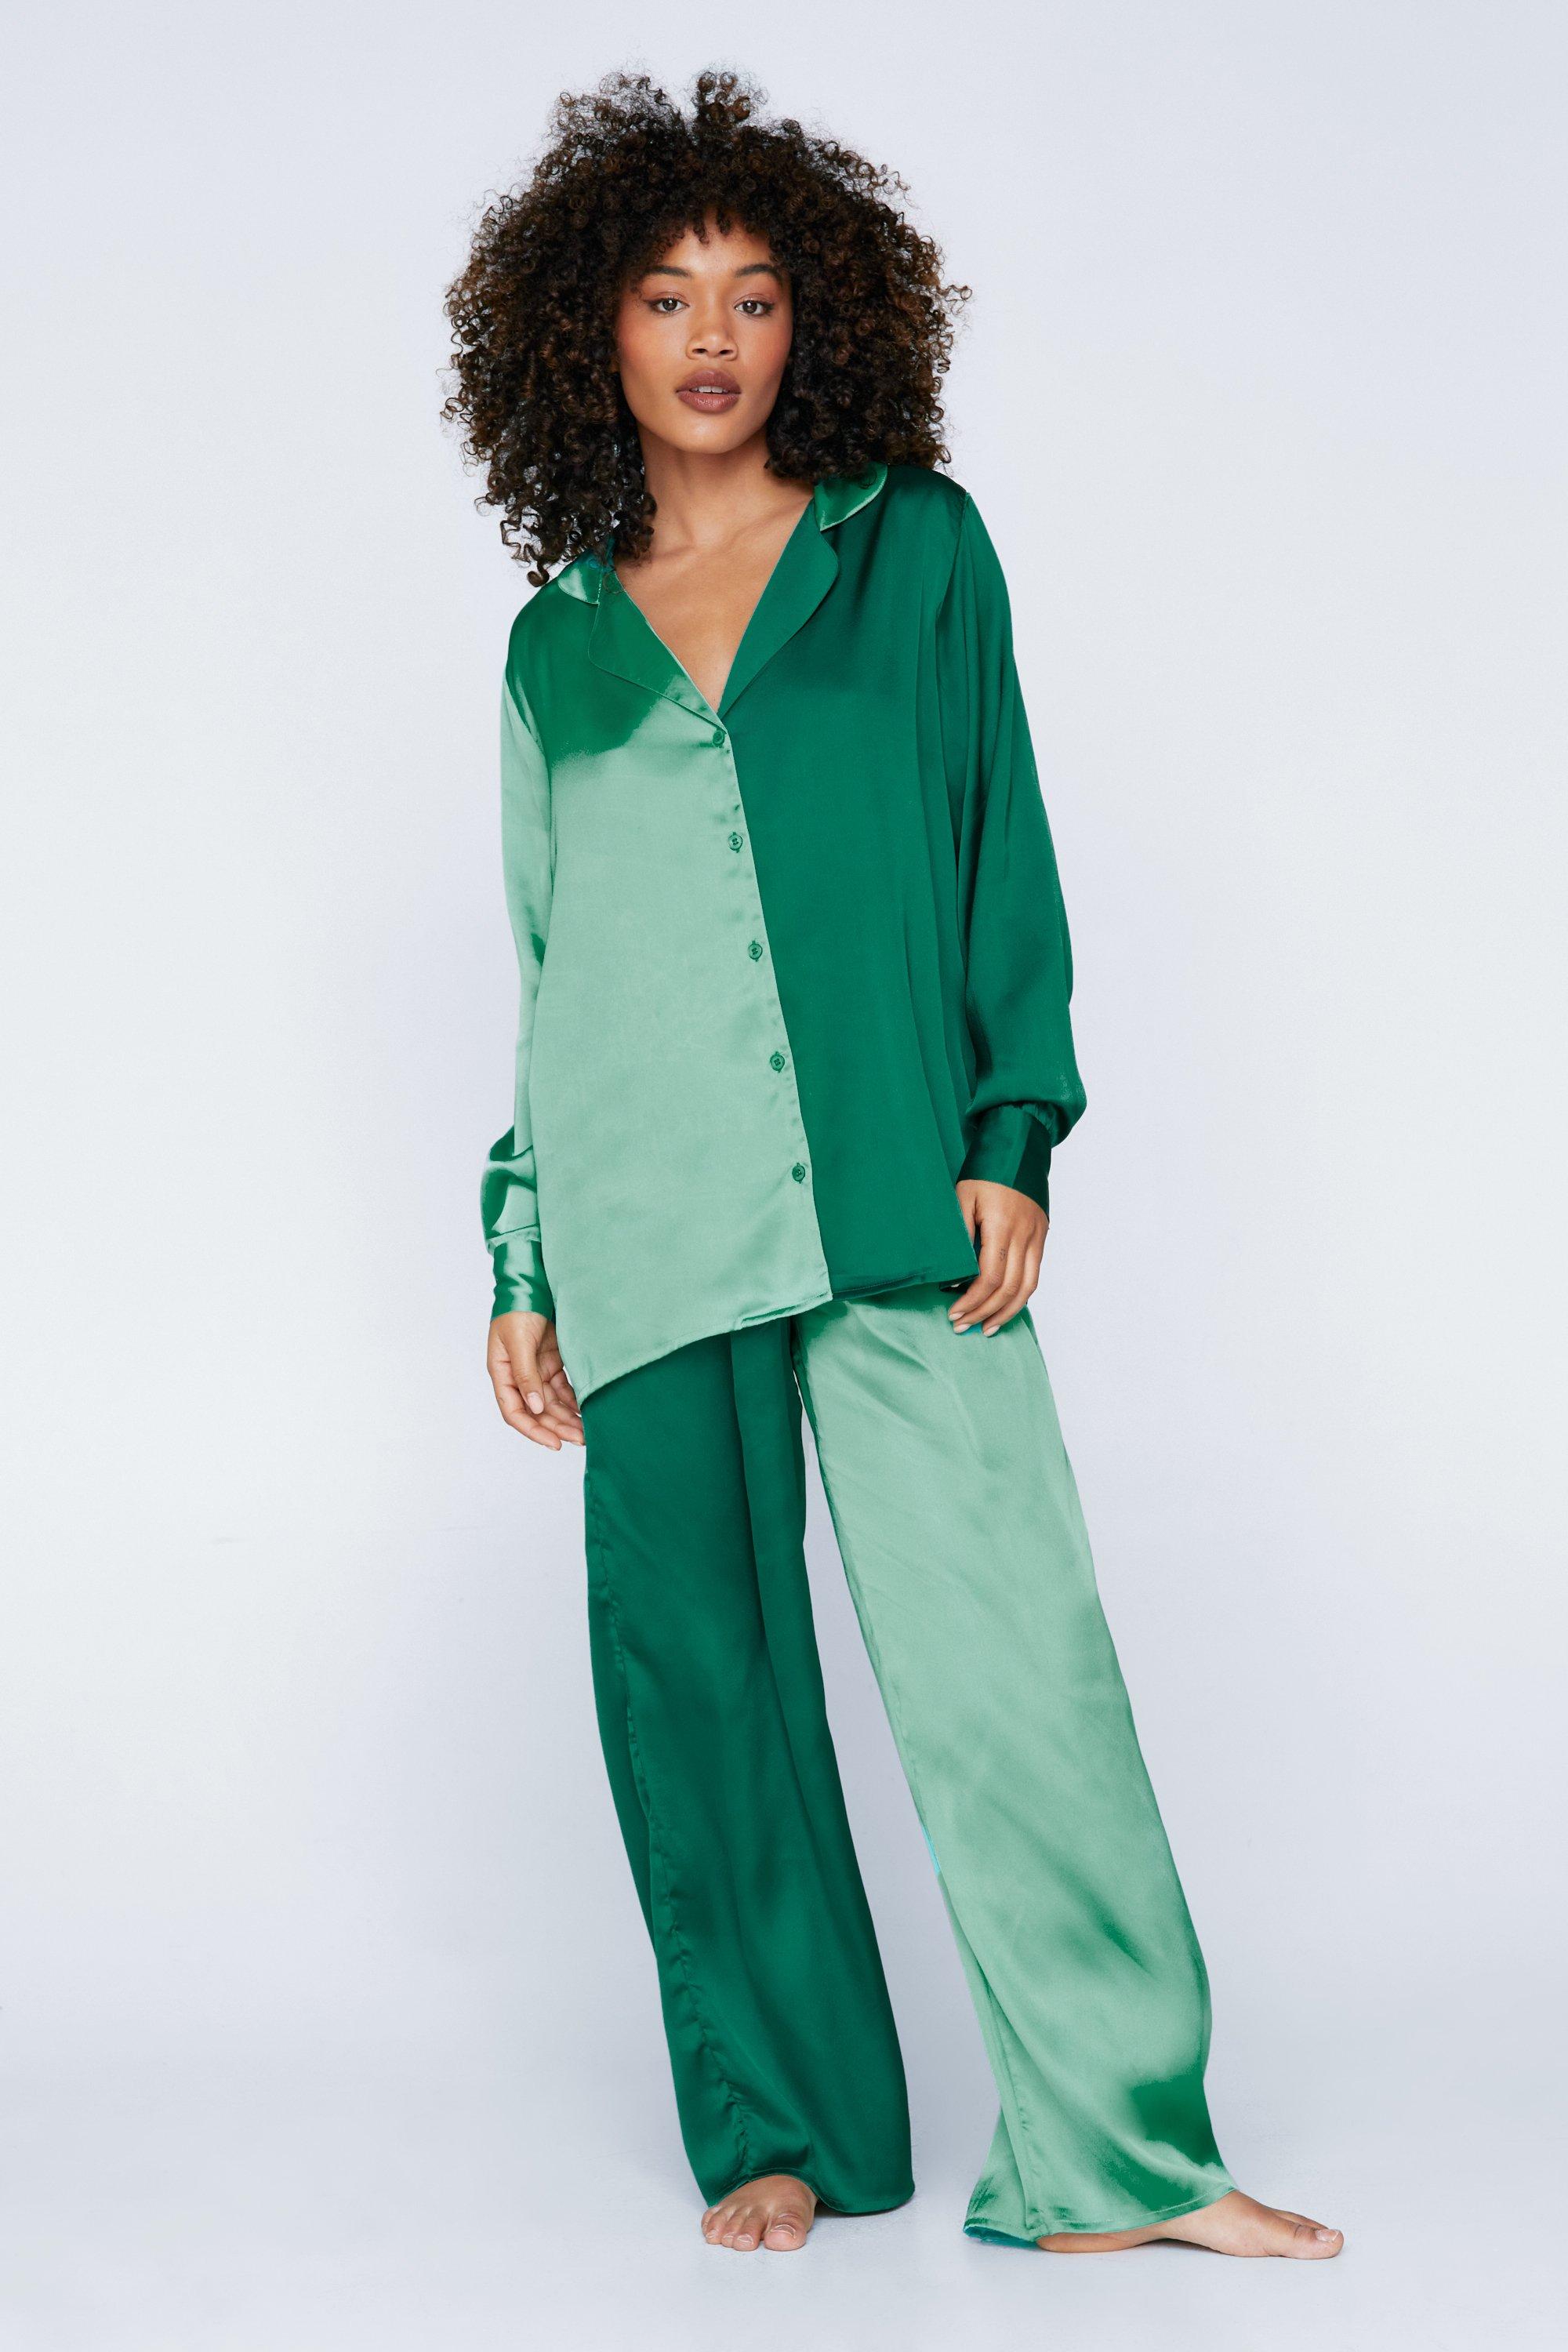 Satin Colorblock Pajama Shirt and Pants Set